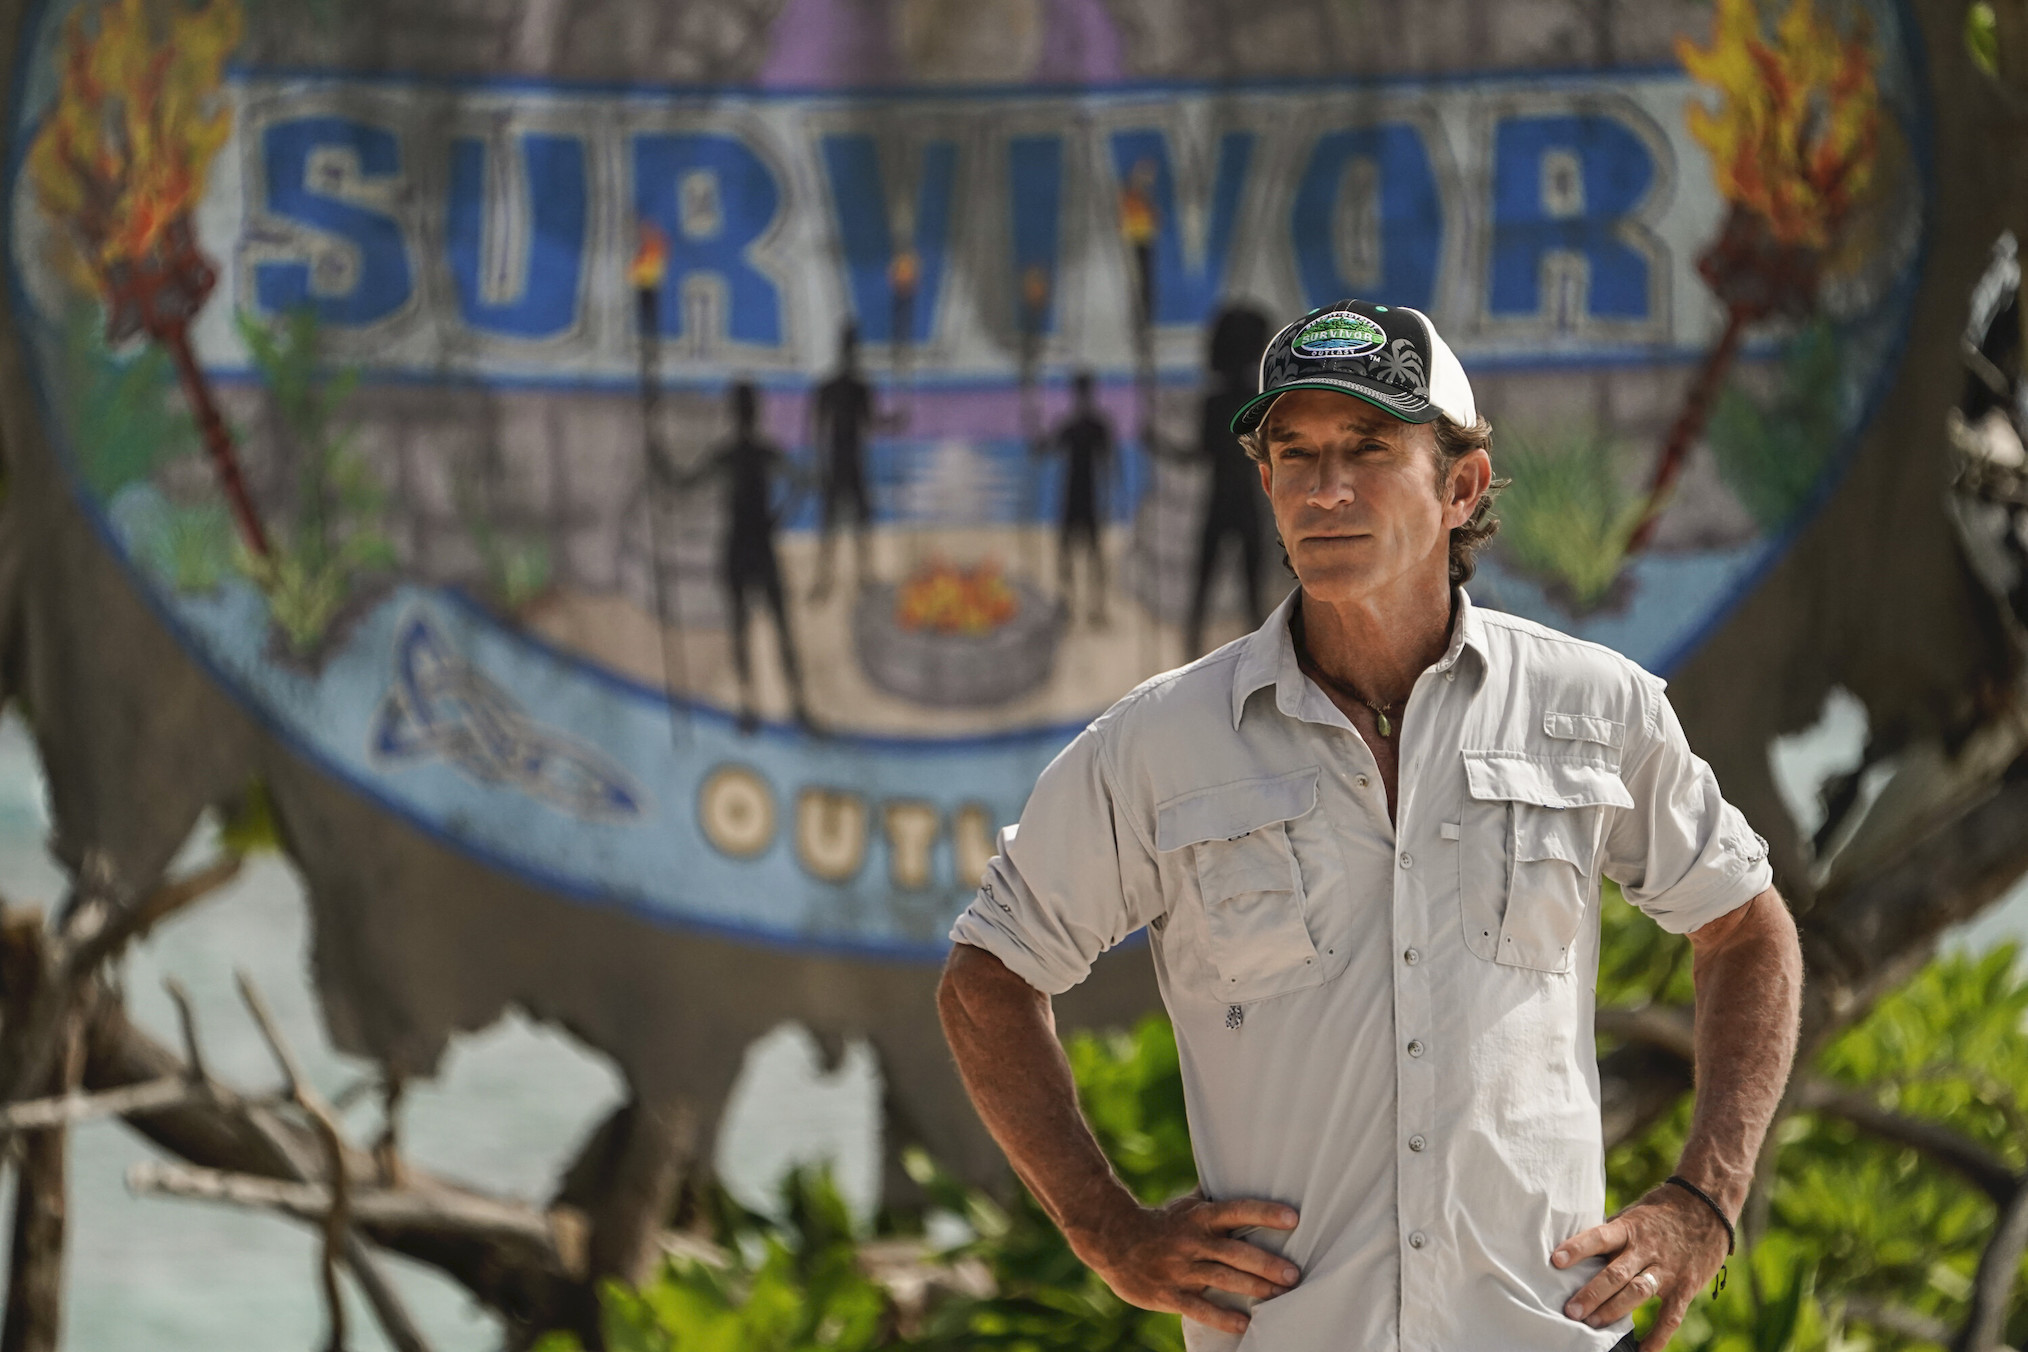 Jeff Probst in Survivor 44 Episode 3